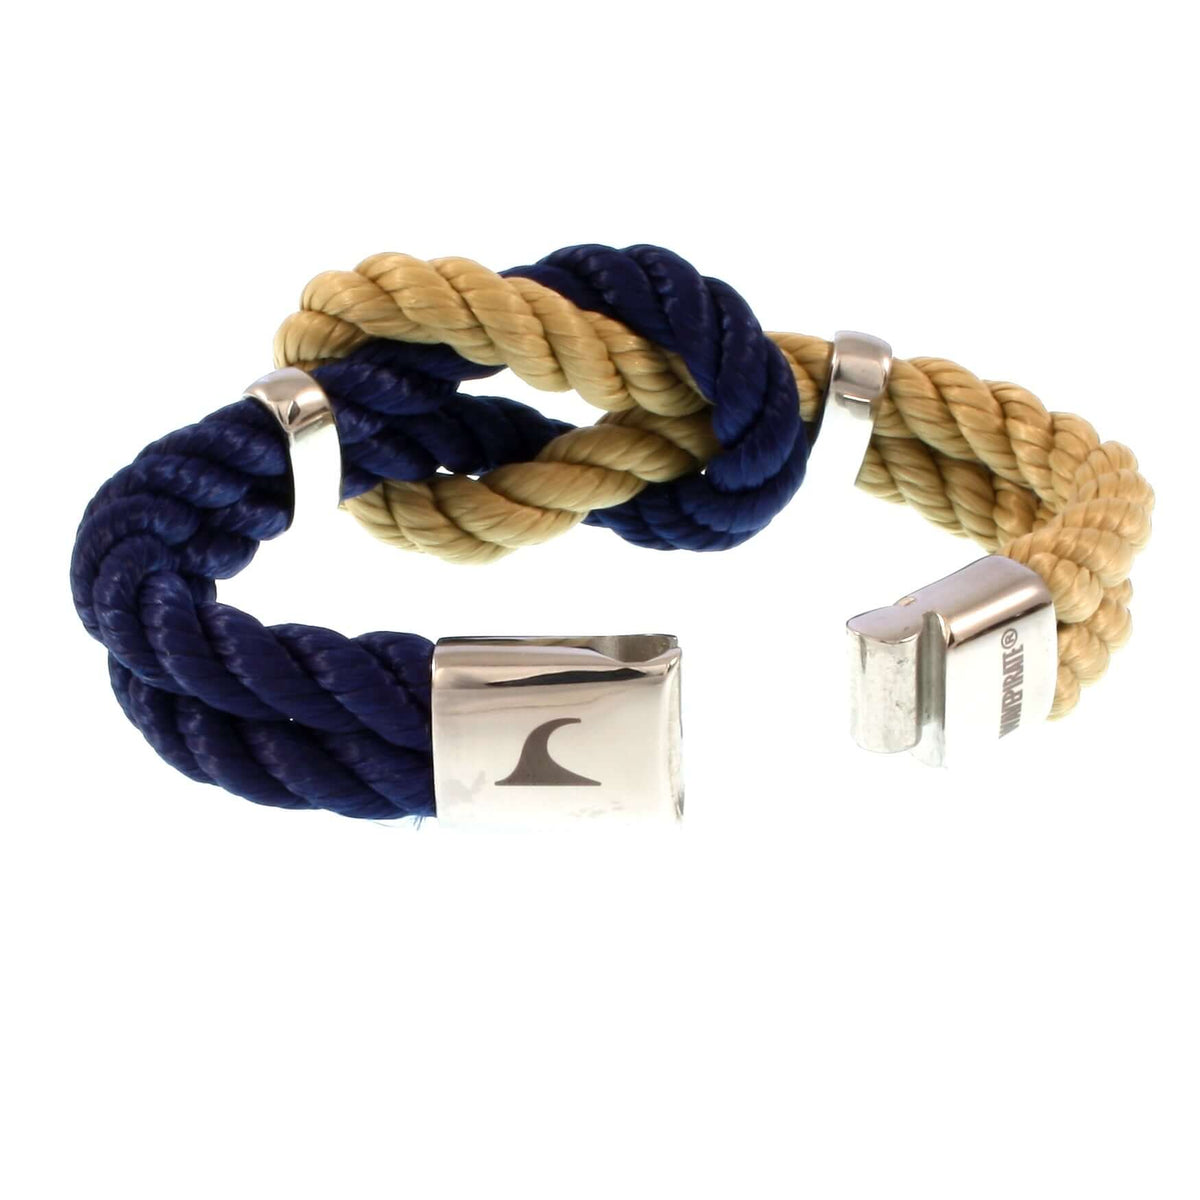 Damen-Segeltau-armband-pure-blau-natur-beige-silber-kordel-geflochten-Edelstahlverschluss-offen-wavepirate-shop-k